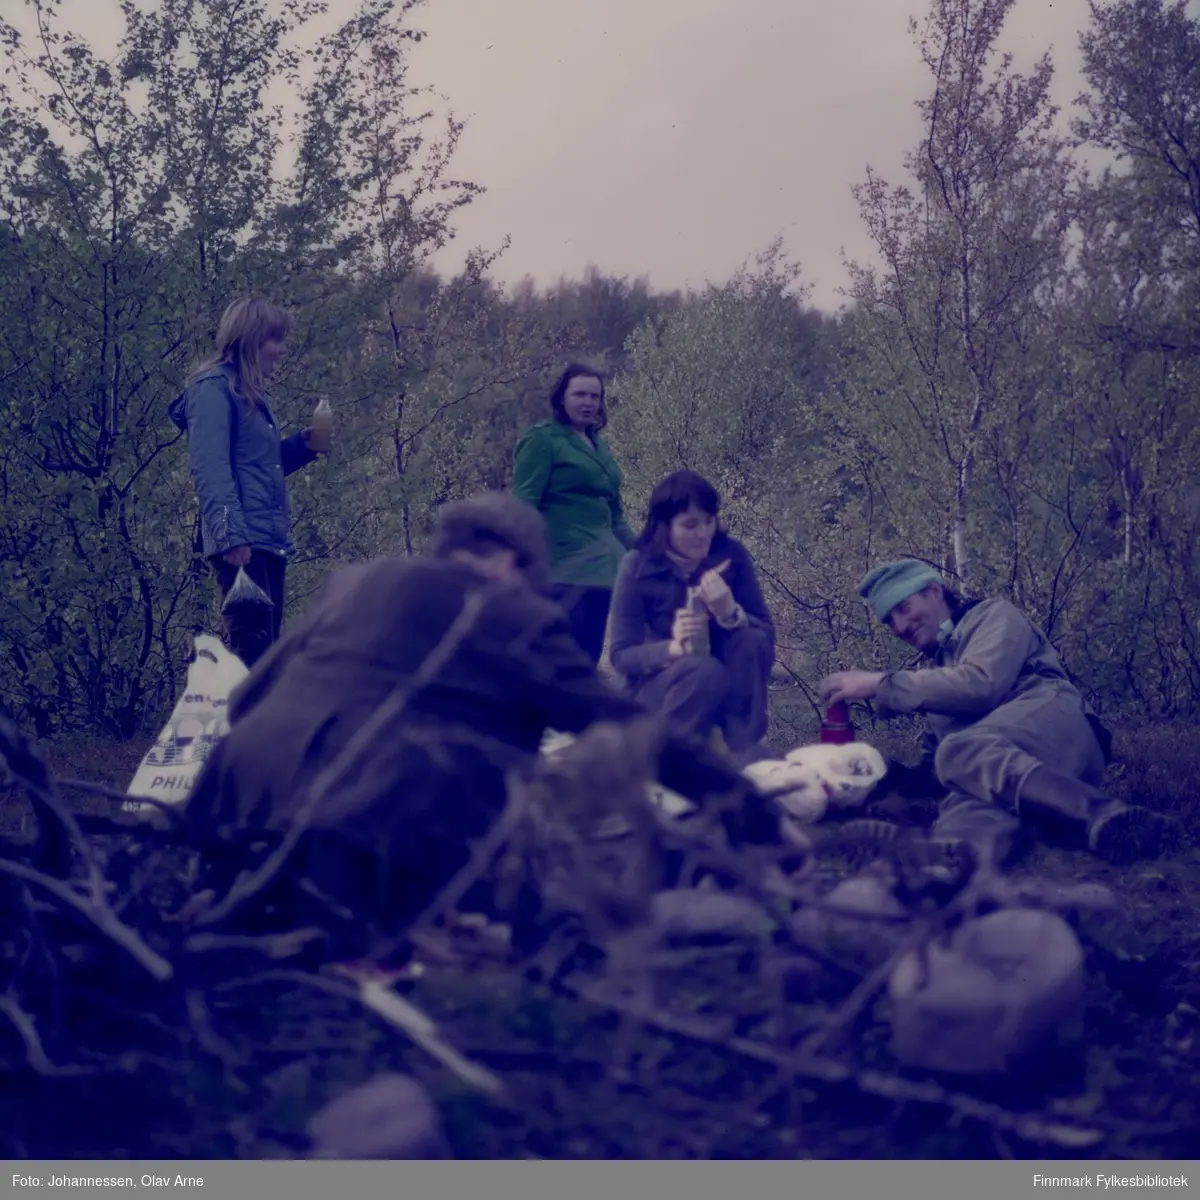 Foto av tenåringer på skogstur, antagelig bærplukkere i Finnmark. En mann ligger på bakken til høyre med en termos i hånden

Foto trolig tatt på 1970-tallet